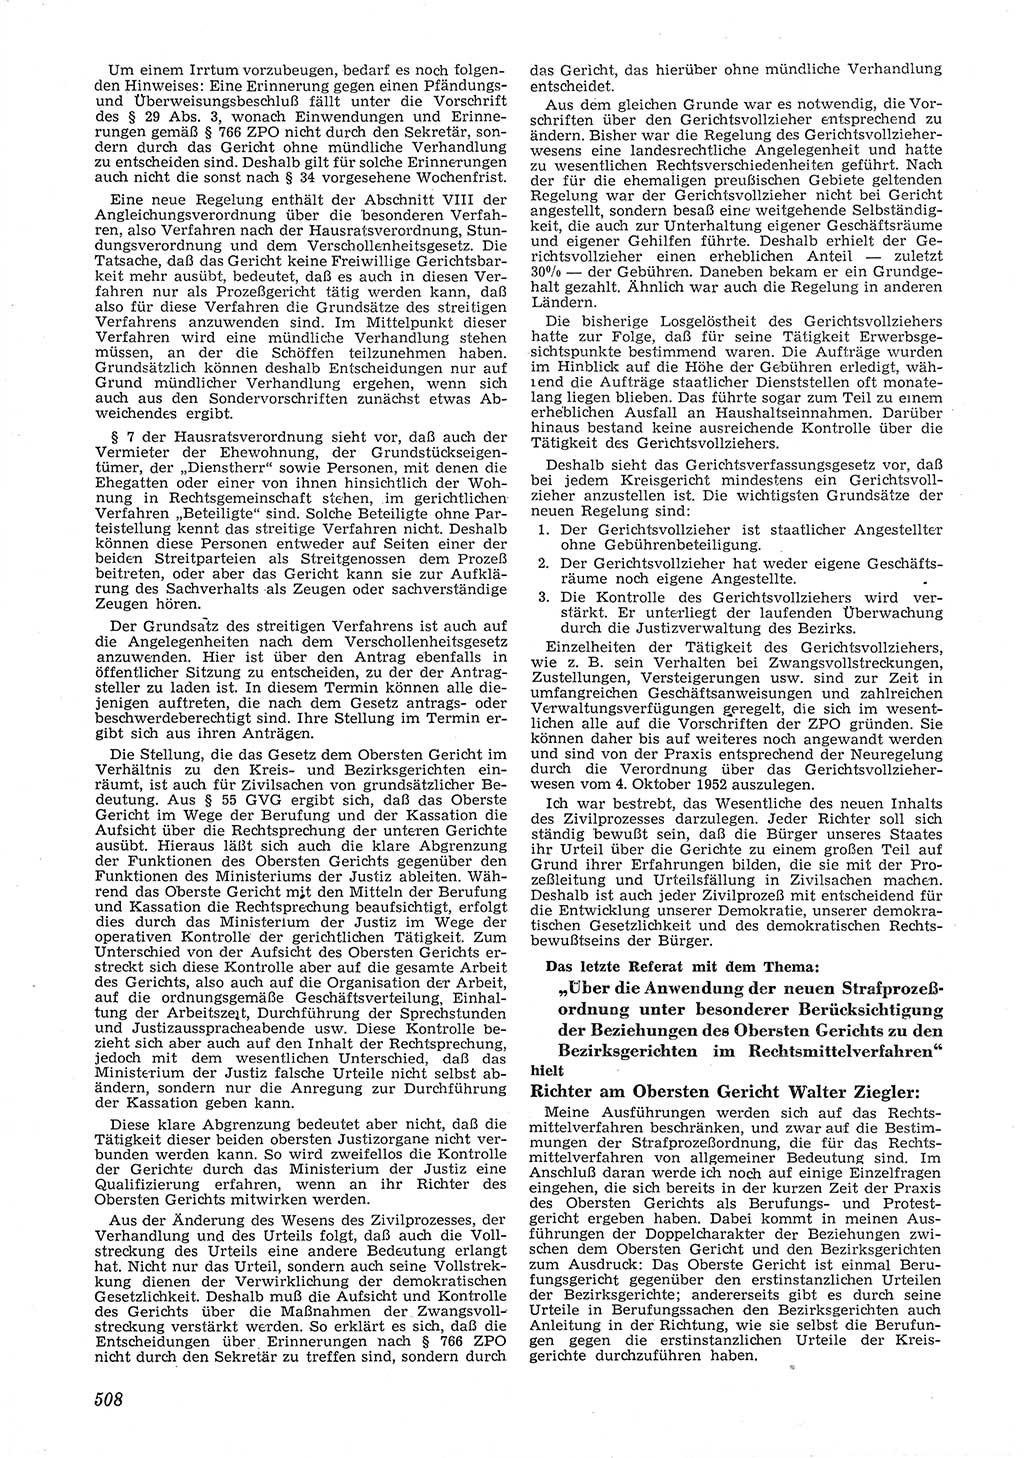 Neue Justiz (NJ), Zeitschrift für Recht und Rechtswissenschaft [Deutsche Demokratische Republik (DDR)], 6. Jahrgang 1952, Seite 508 (NJ DDR 1952, S. 508)